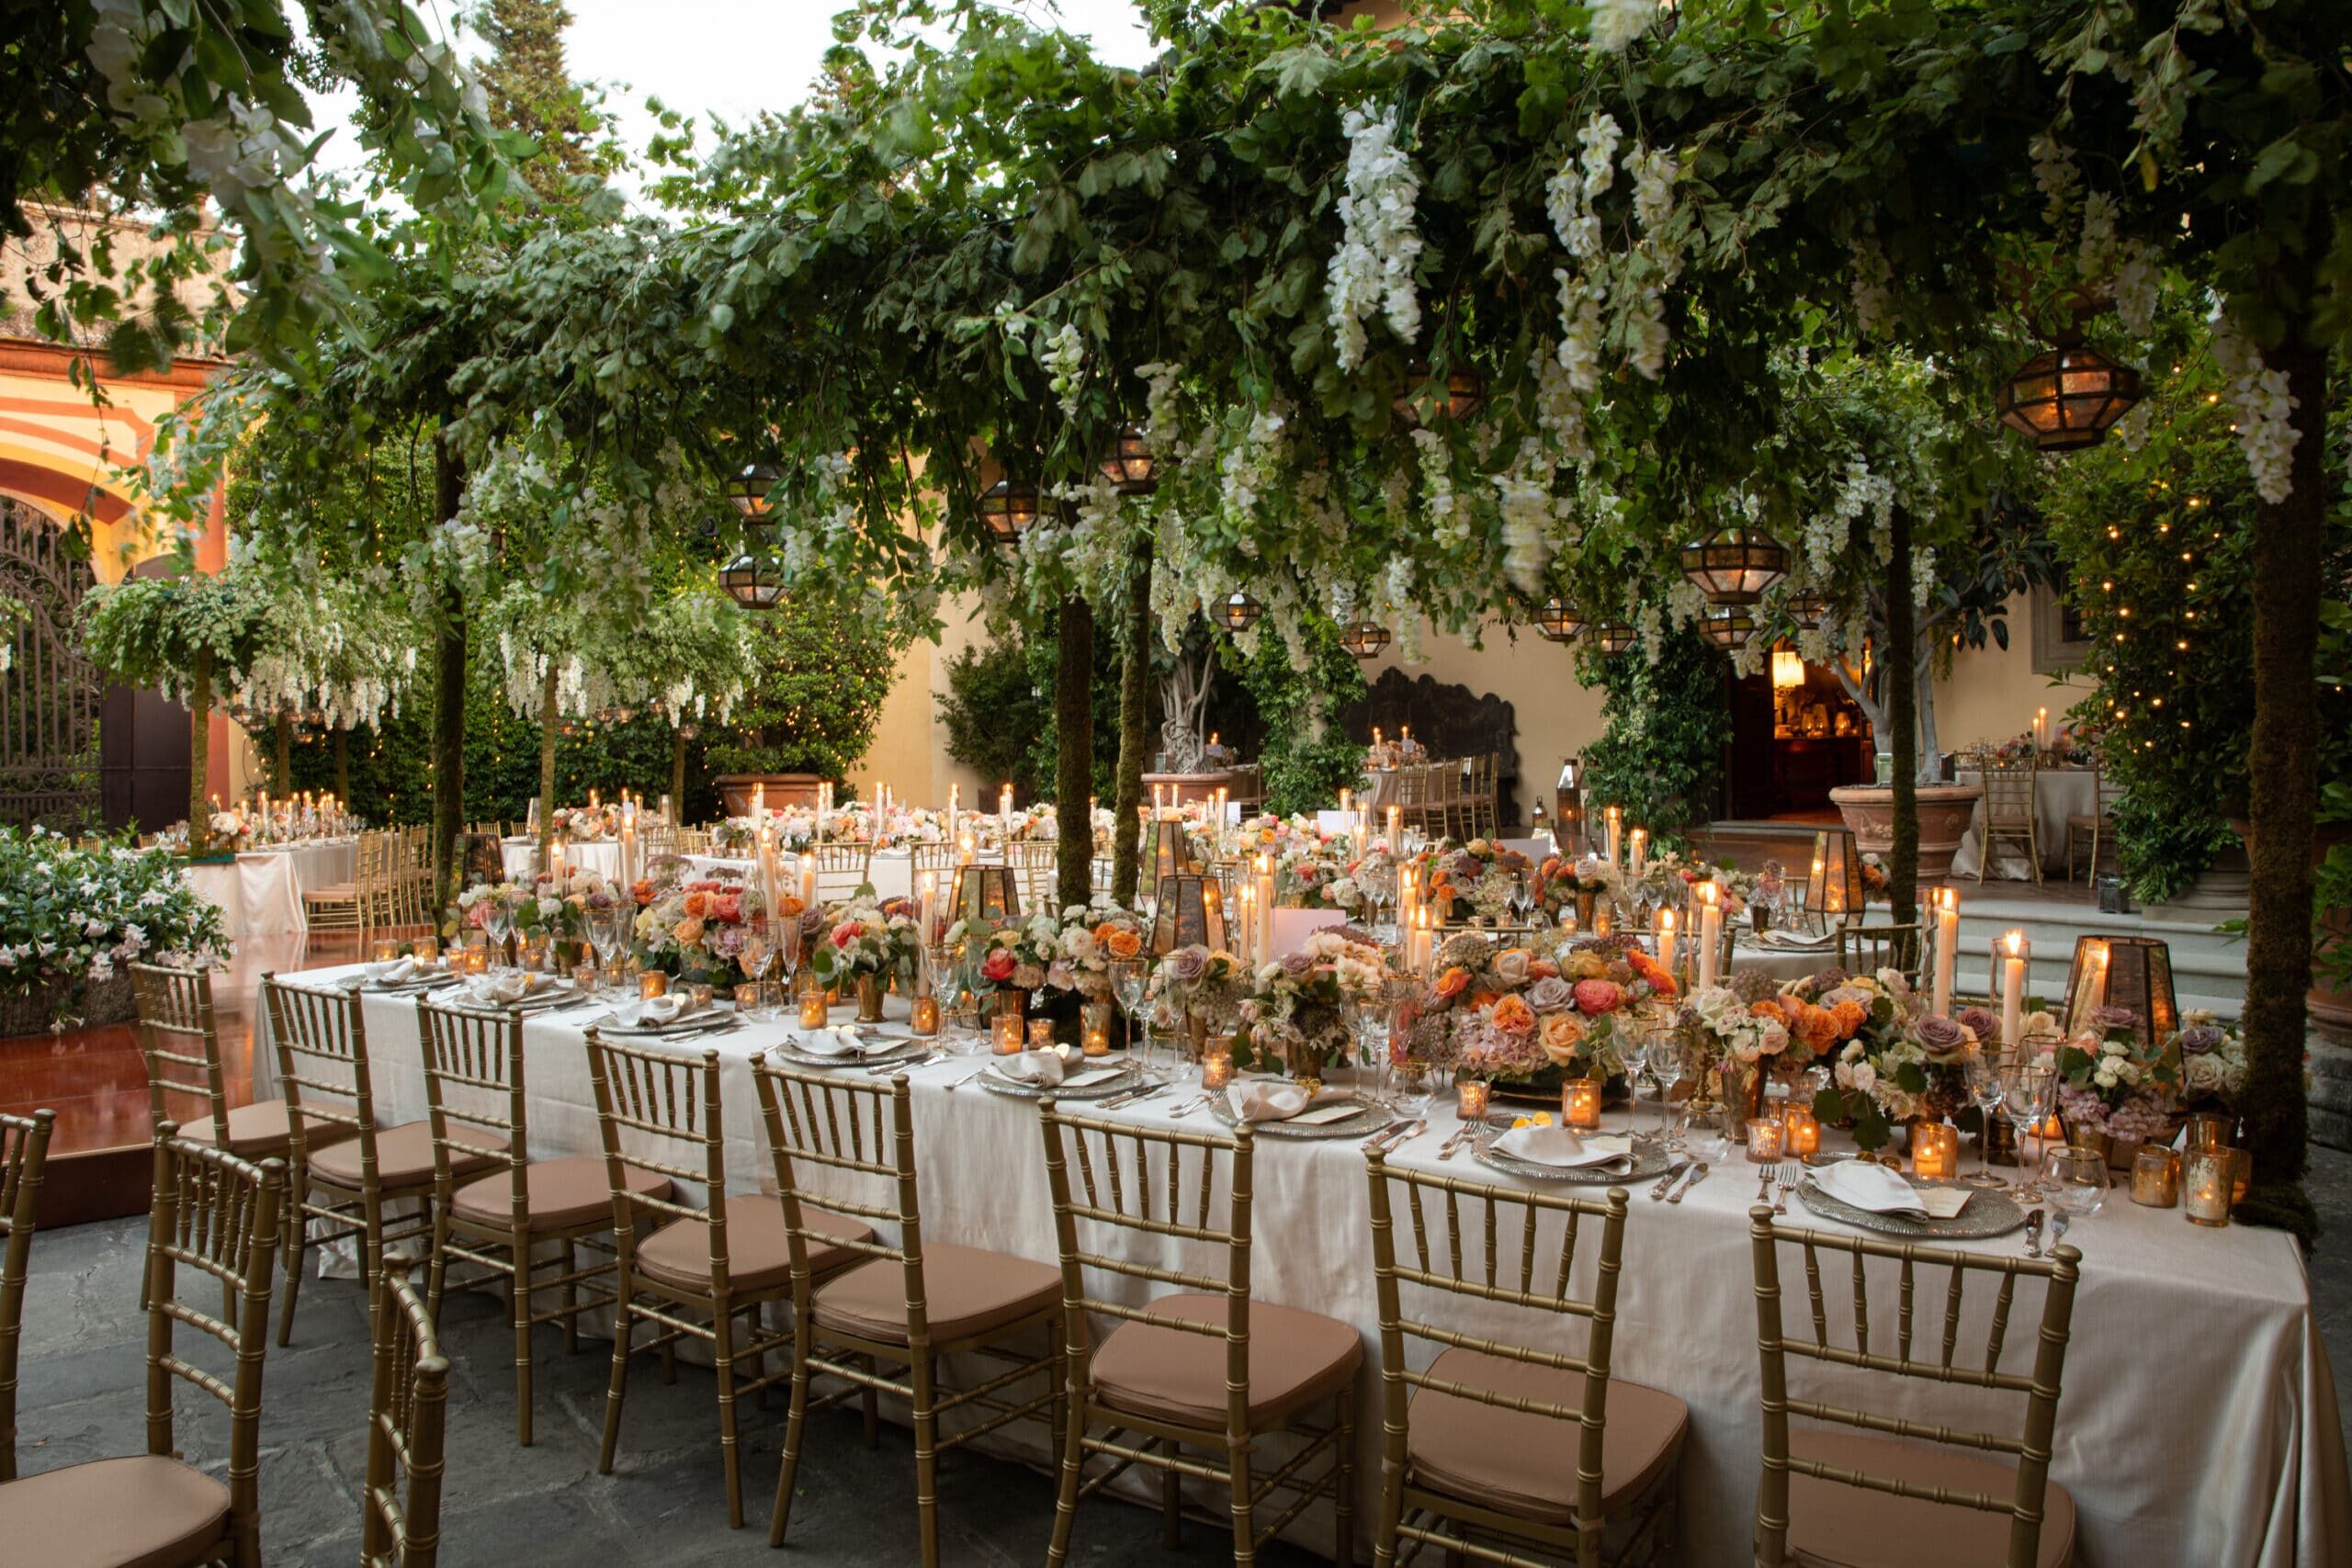 Secret garden style decor for elegant wedding tables decor